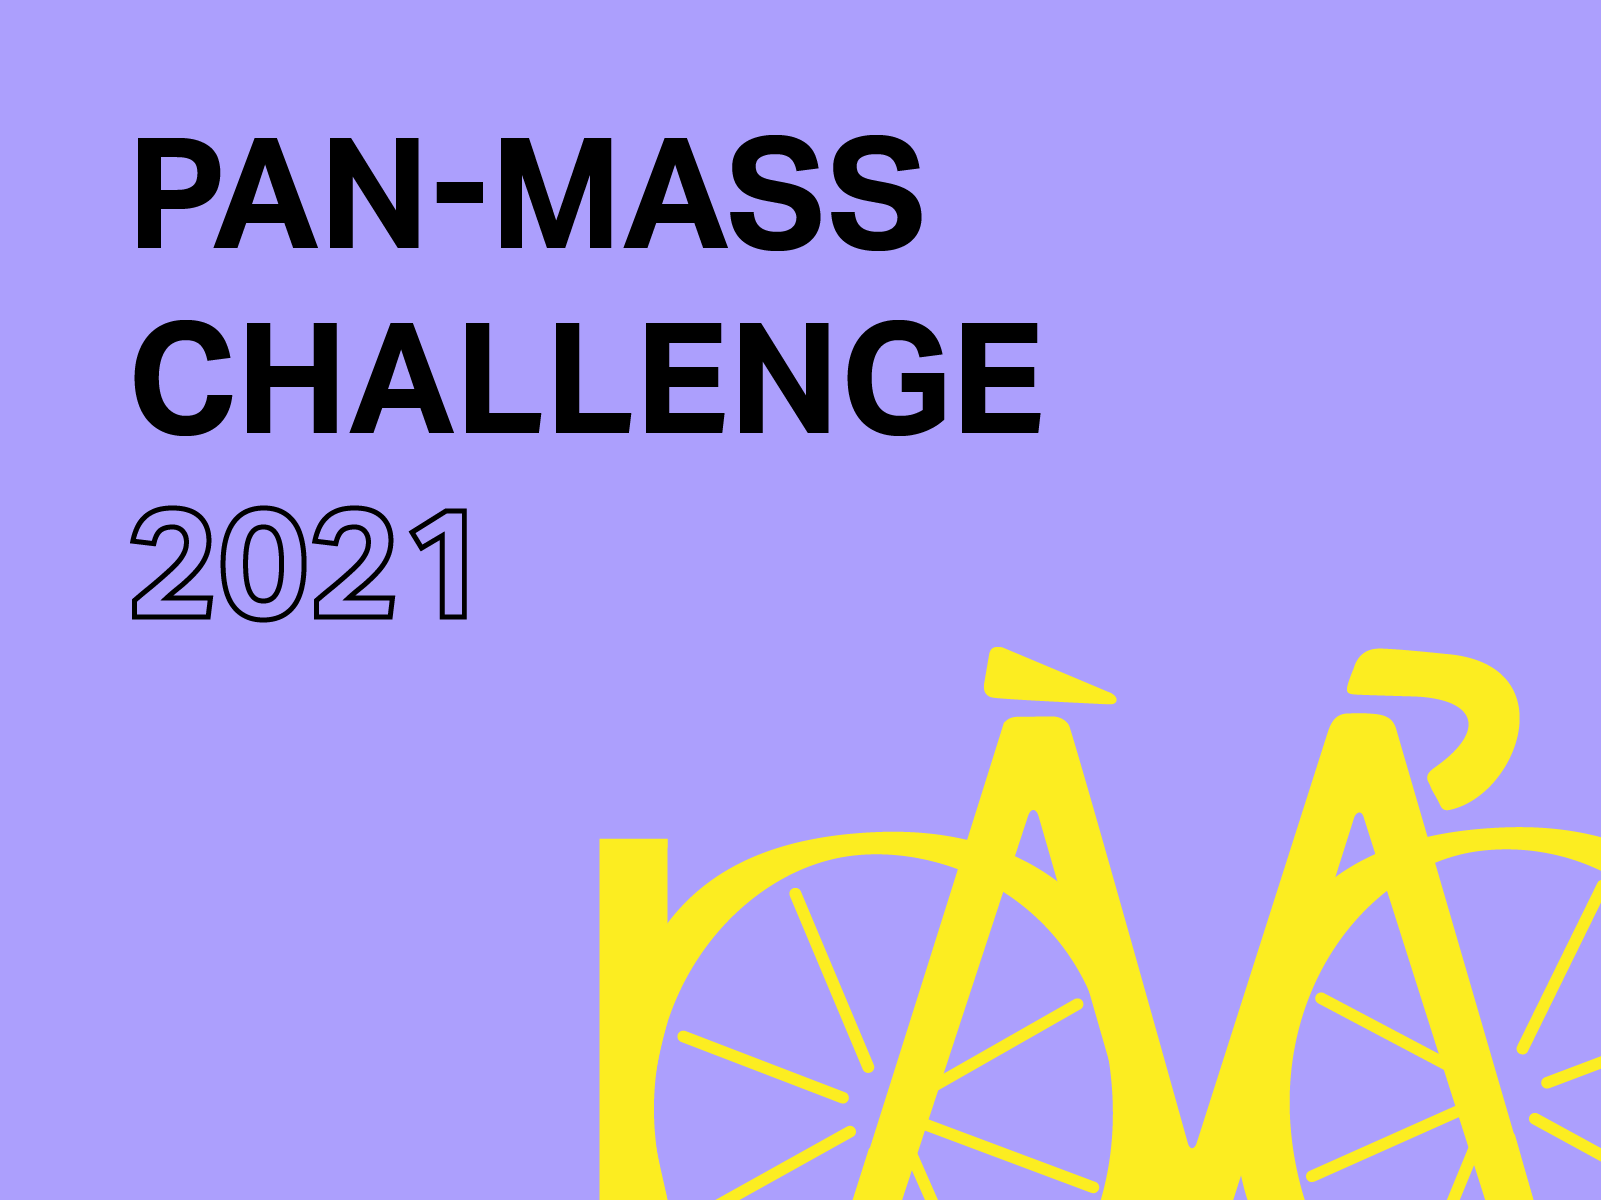 The Pan-Mass Challenge 2021